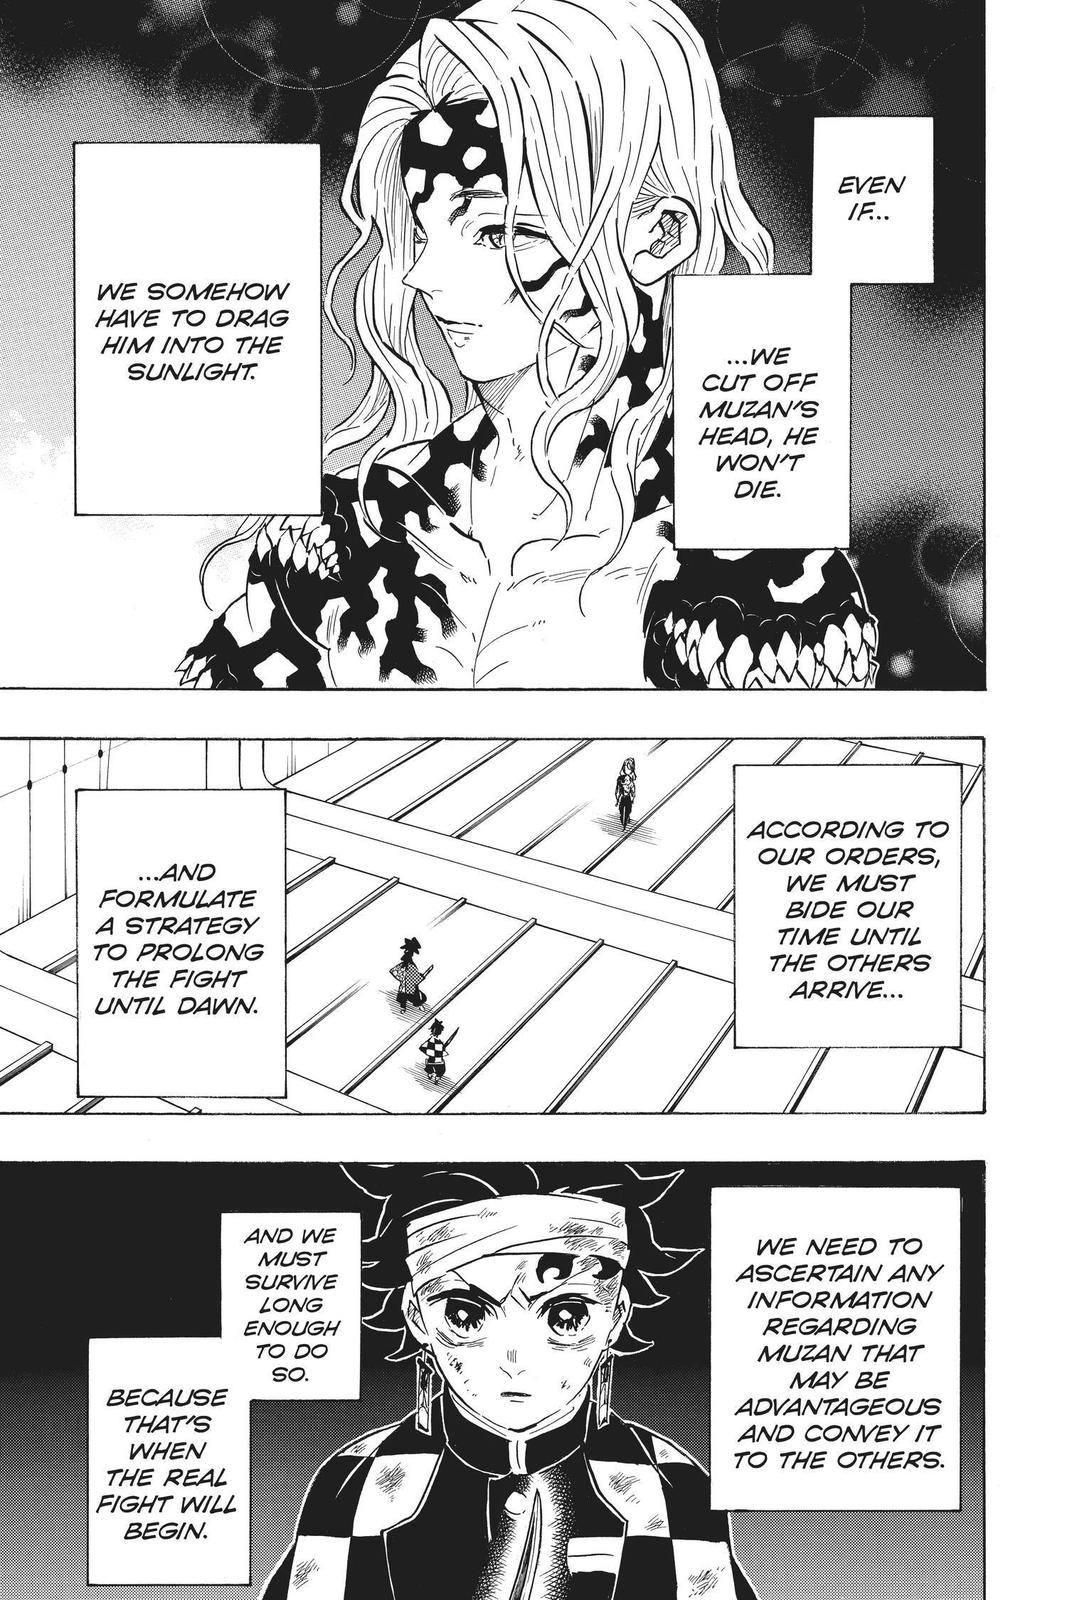 Demon Slayer Manga Manga Chapter - 182 - image 4